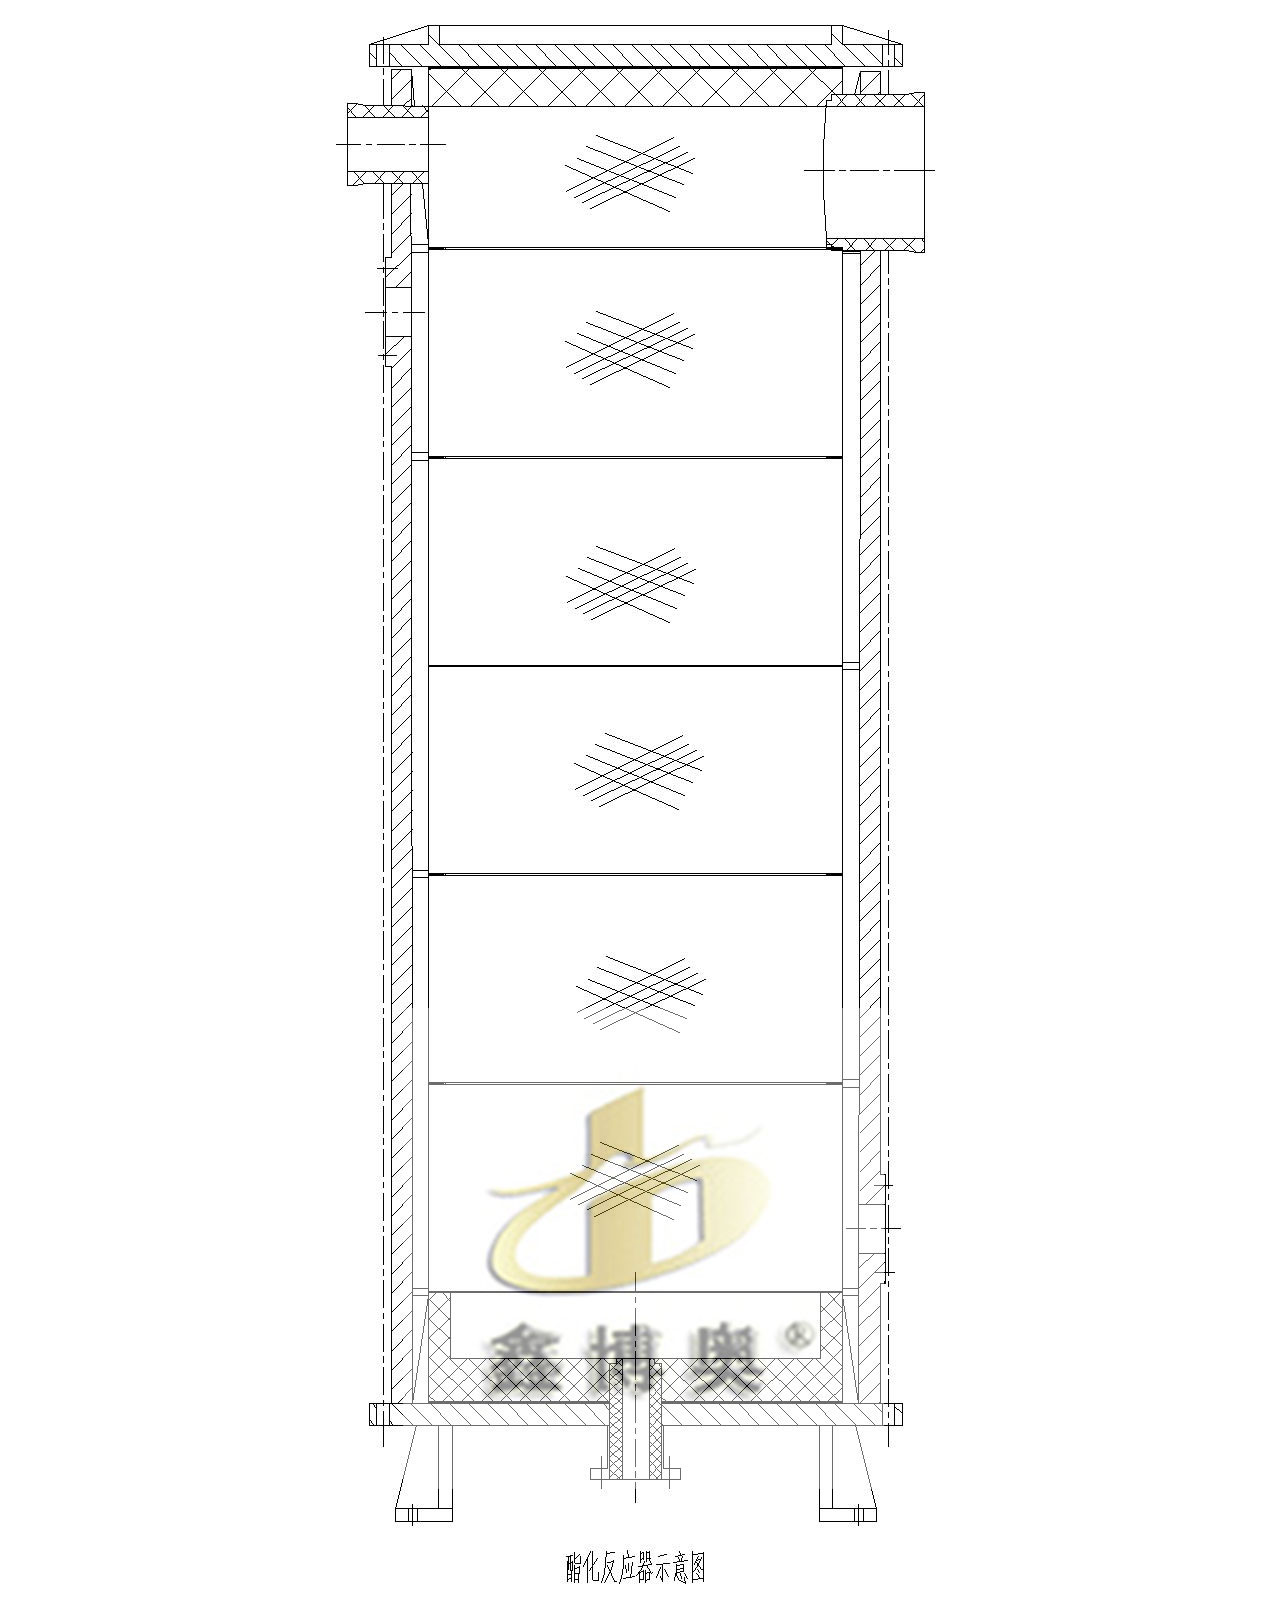 鑫博奥ZHJK系列zhuanli型石墨酯化反应器设计图